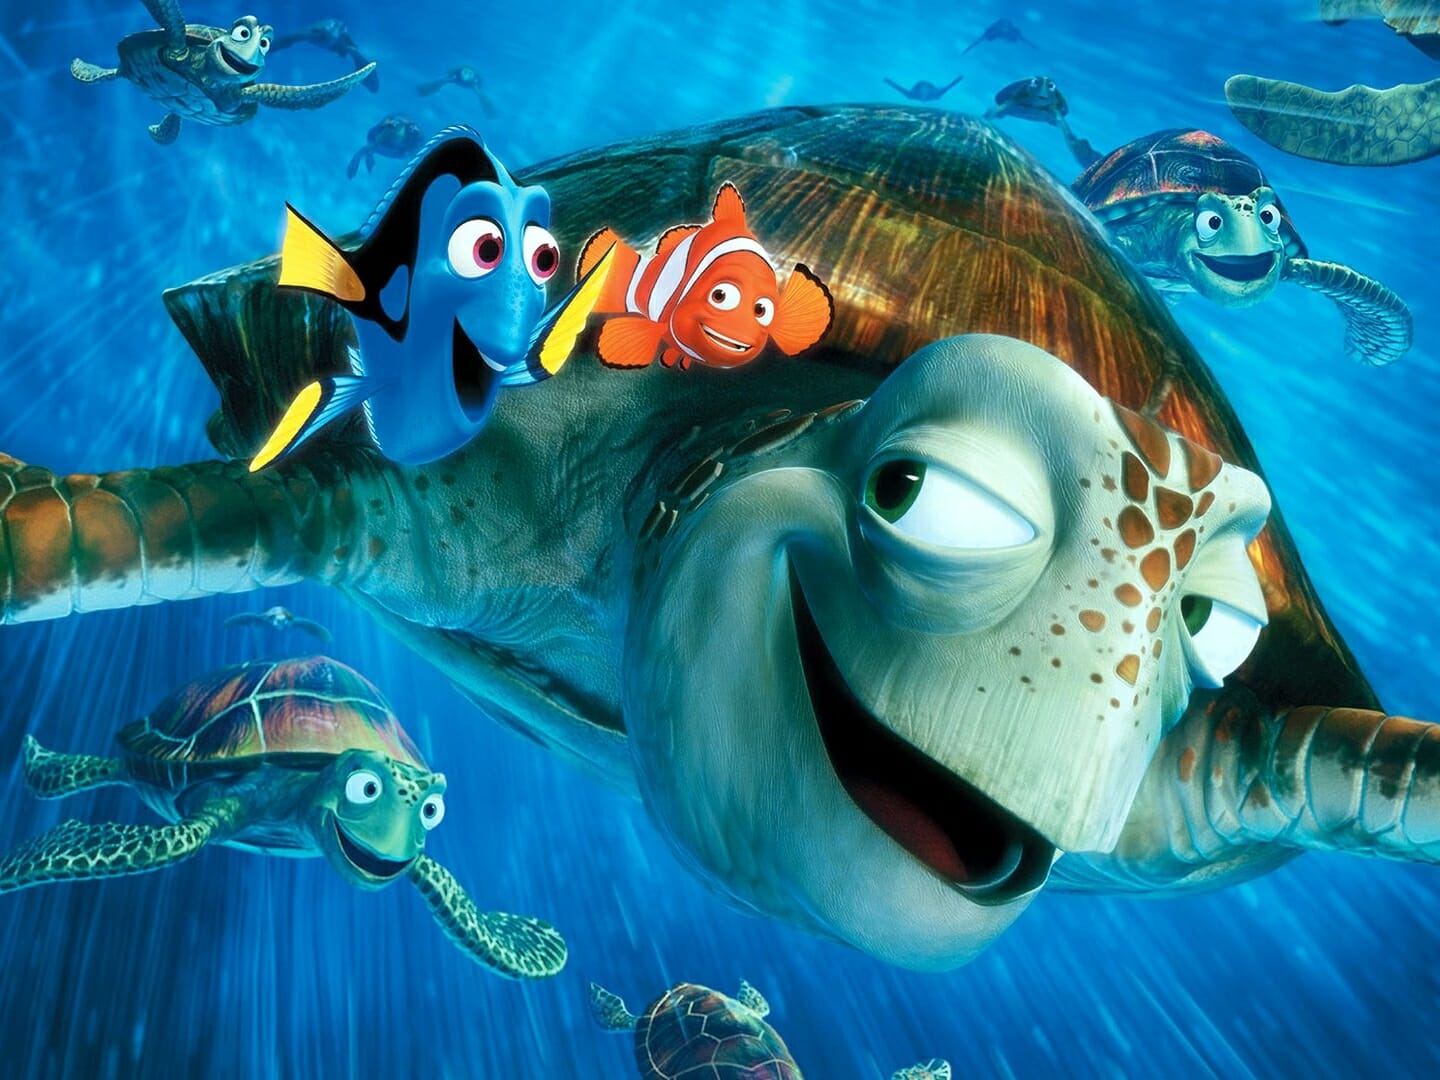 Procurando Nemo foi lançado em 2003